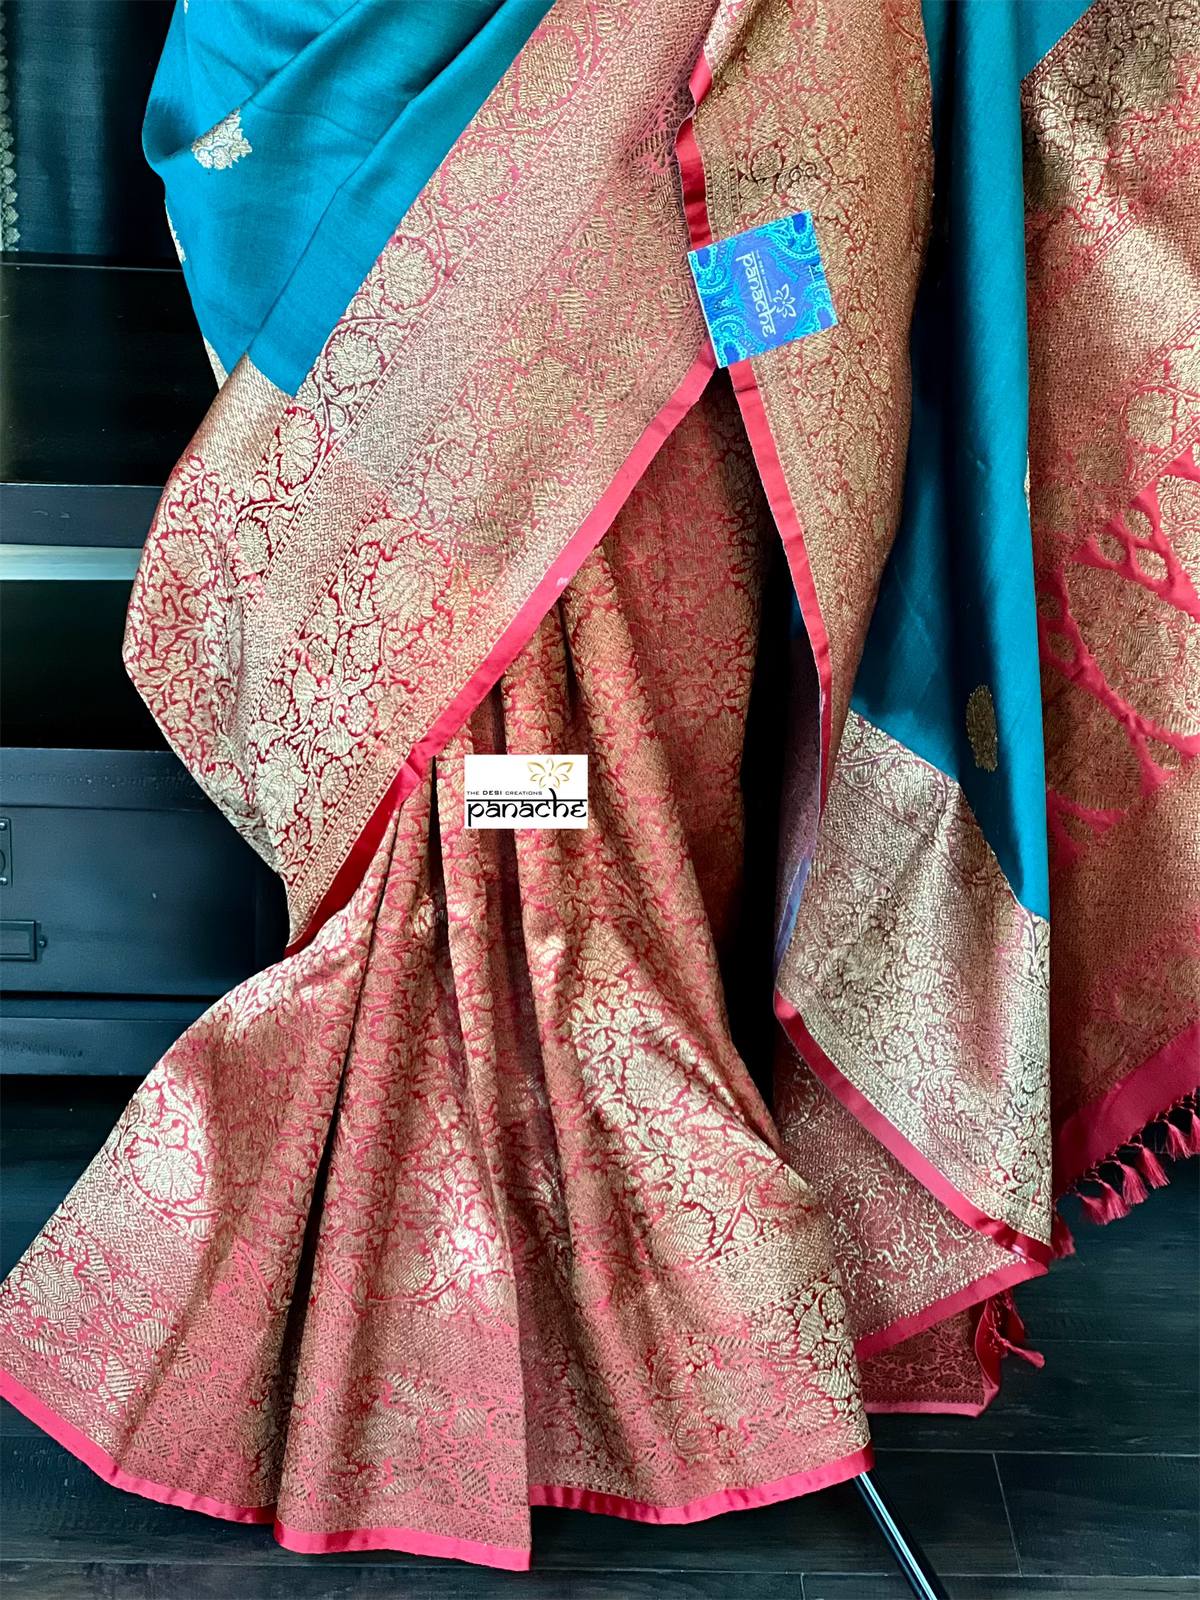 Tussar Silk Banarasi - Teal Blue Red Patli Pallu